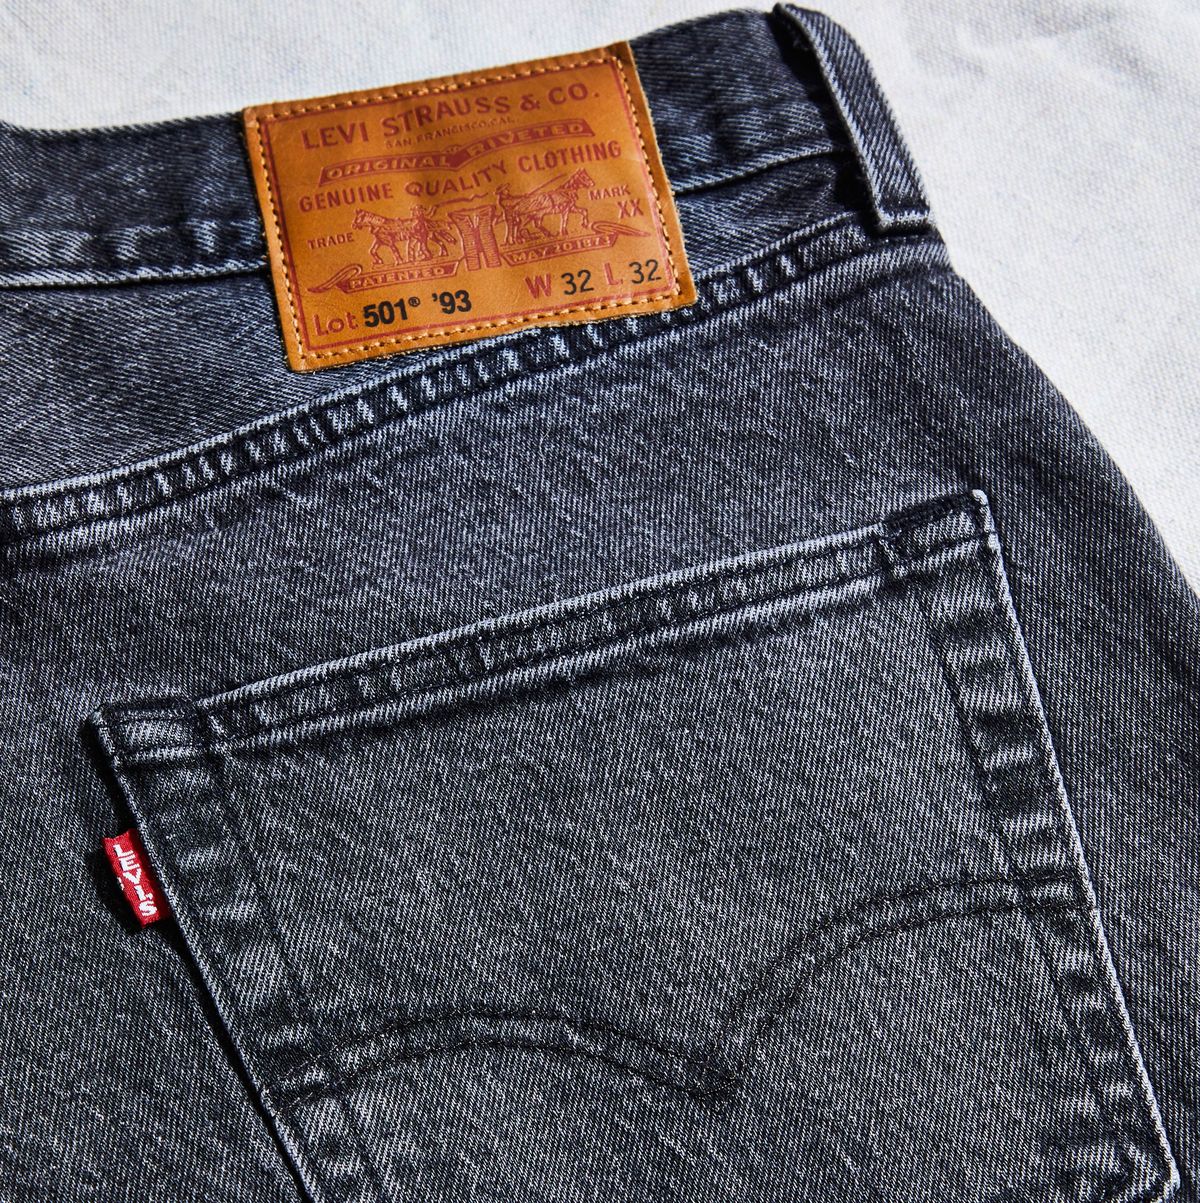 Statistikker Sympatisere Belønning Levi's 501 '93 Jeans Review and Endorsement